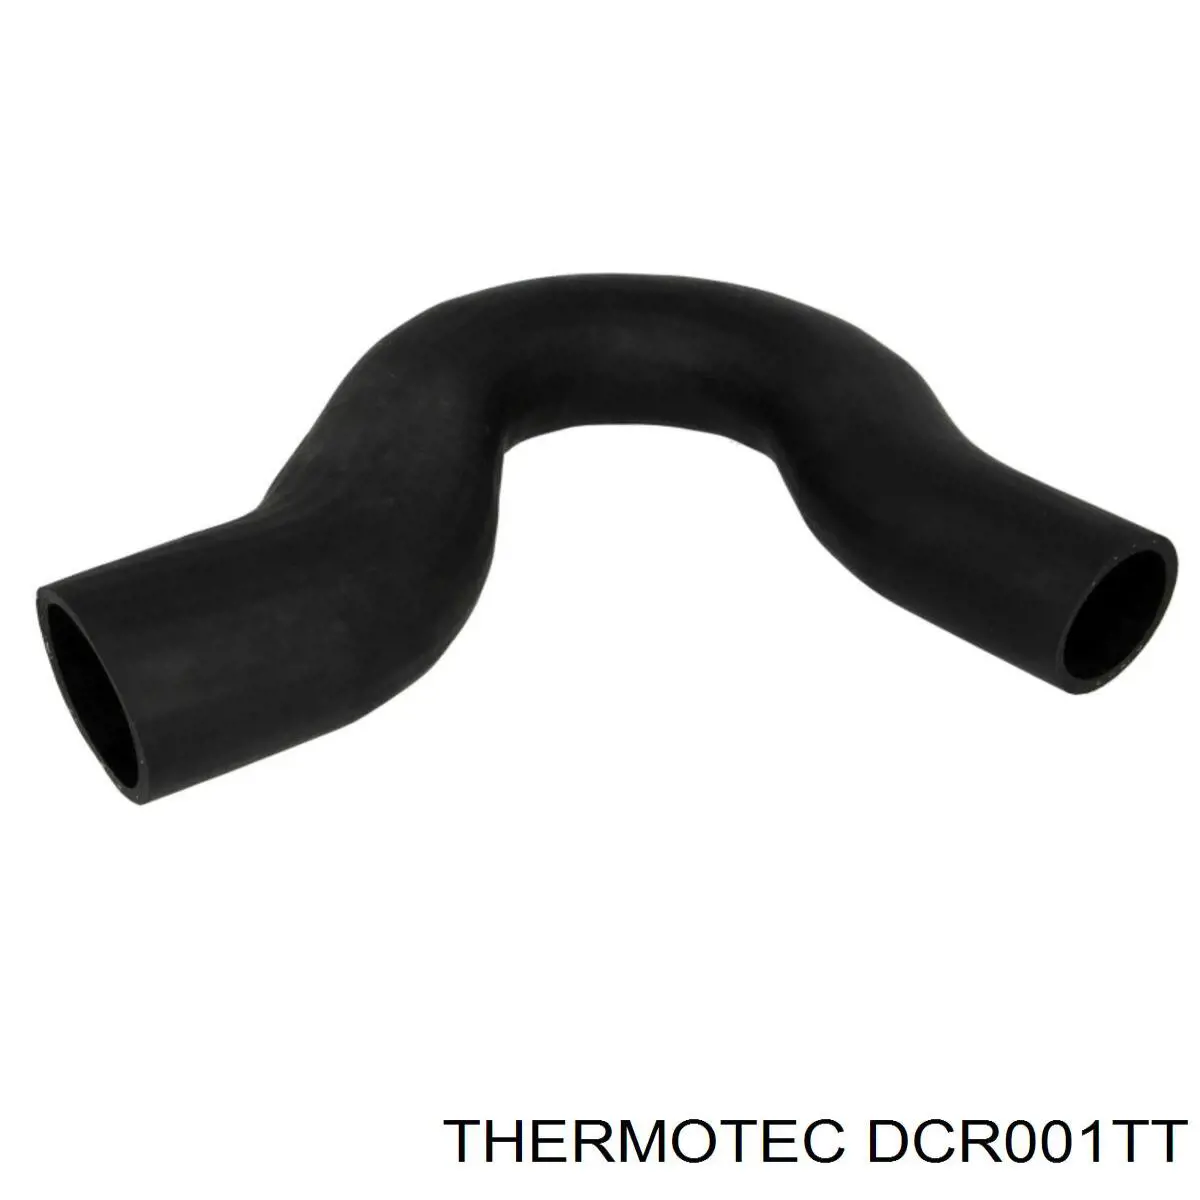 DCR001TT Thermotec mangueira (cano derivado esquerda de intercooler)